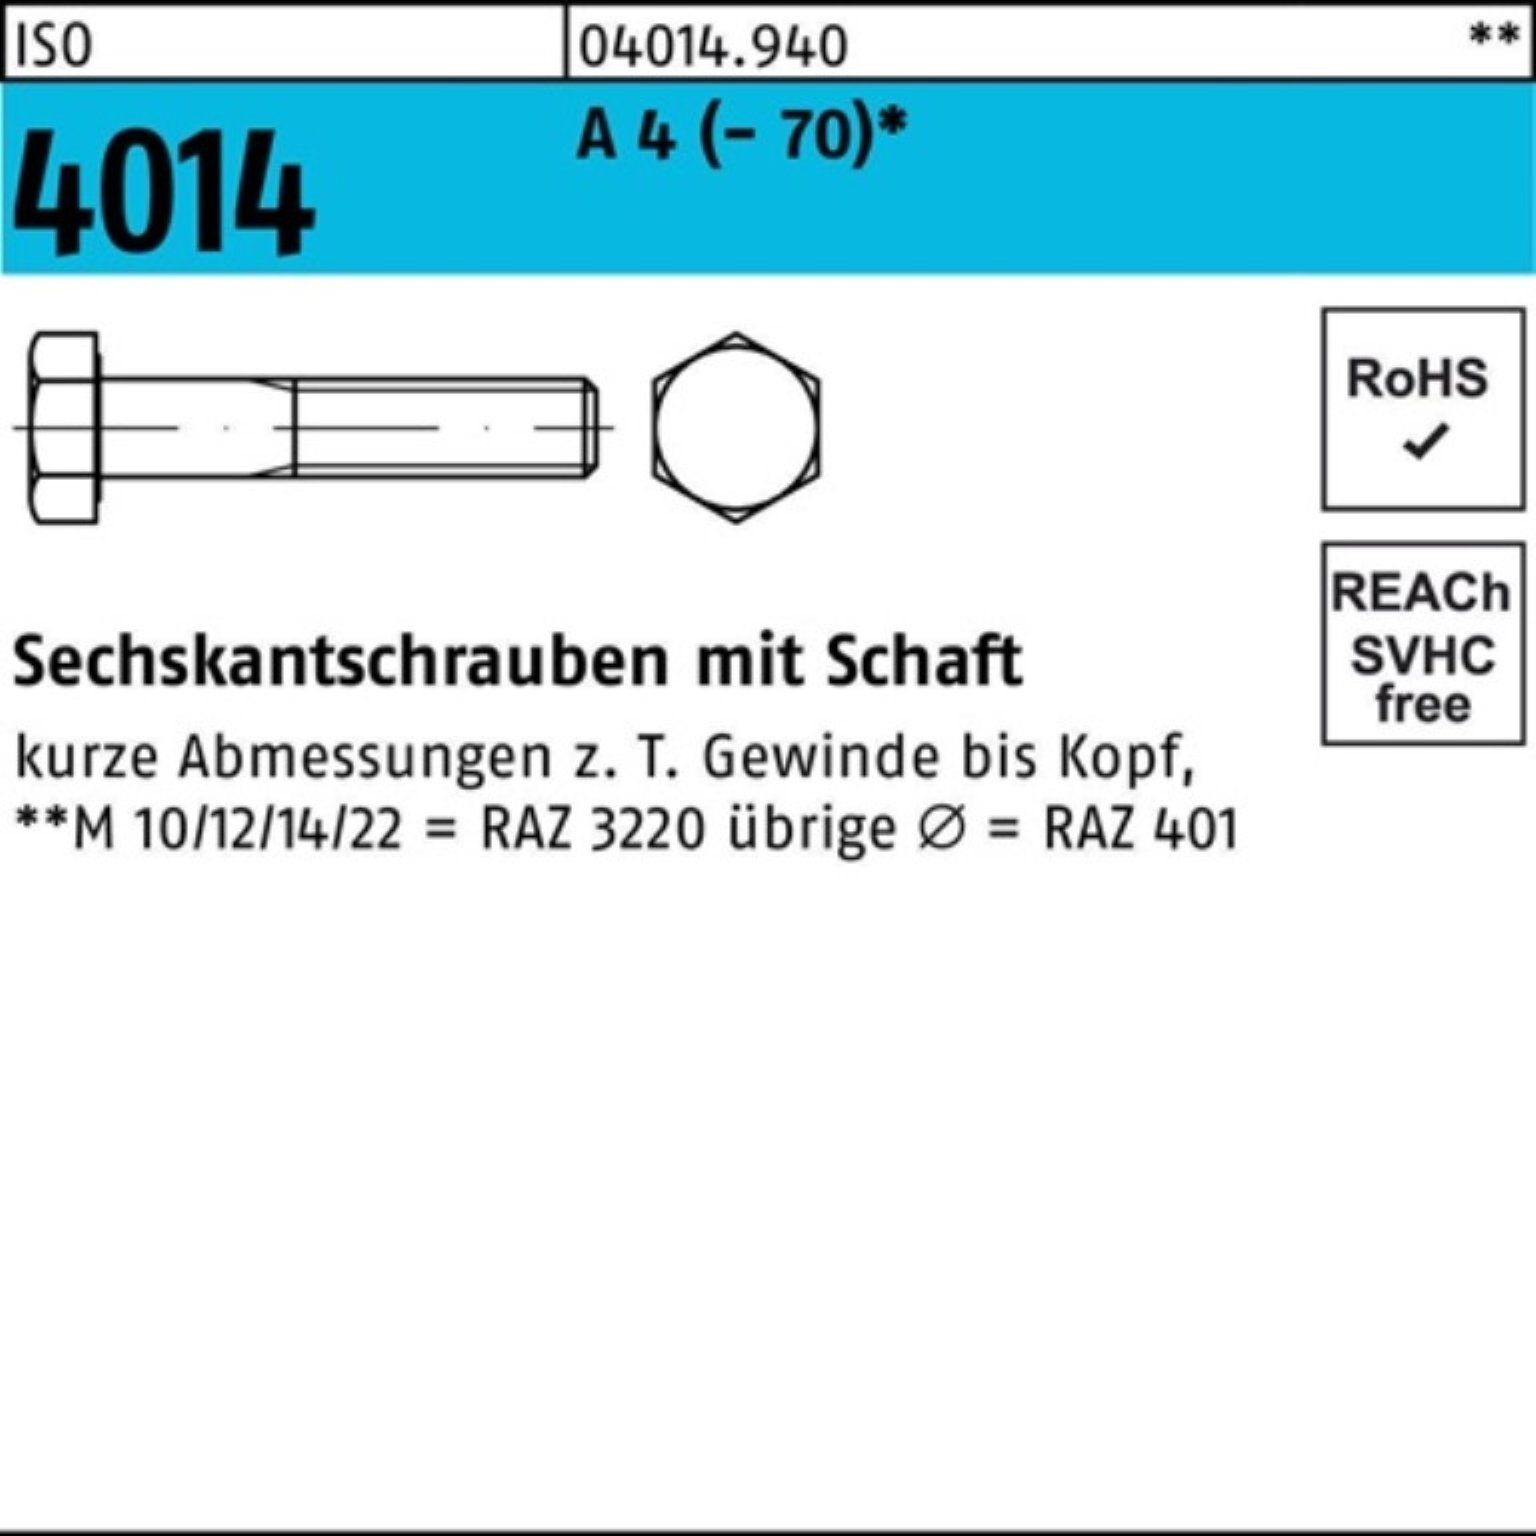 Sechskantschraube Sechskantschraube Bufab Schaft 4 Pack 1 170 Stück M30x 100er 4014 ISO ISO A